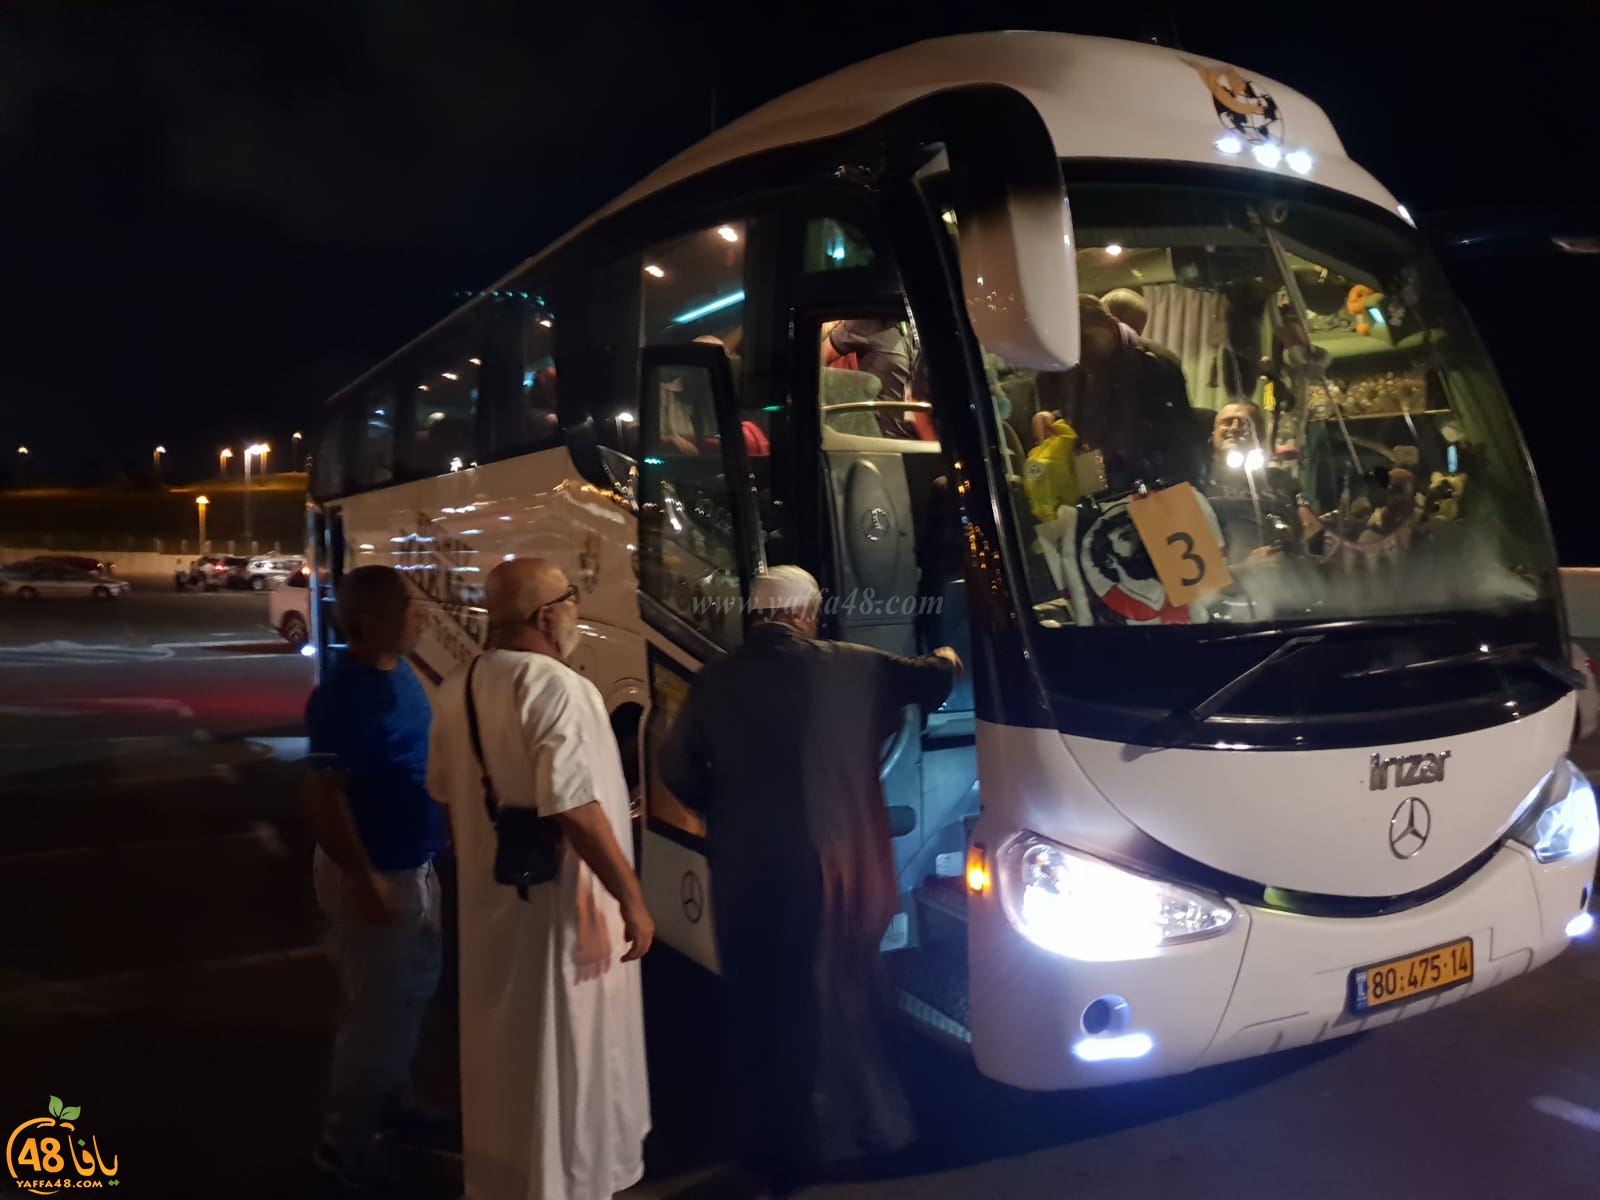 بالصور: انطلاق حافلة الفوج الثاني من حجاج مدينة يافا الى الديار الحجازية